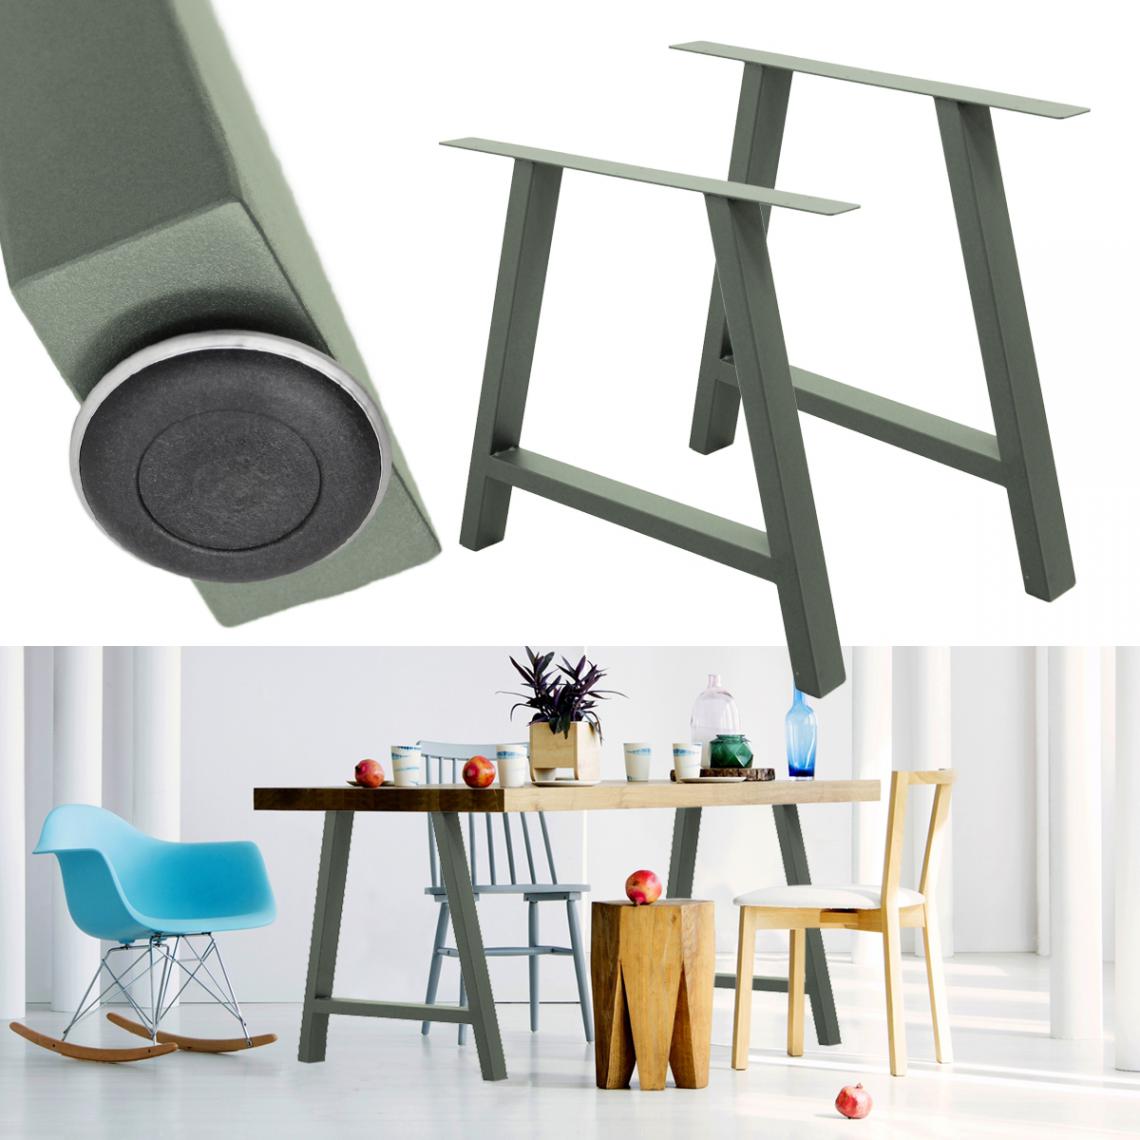 Ecd Germany - 2x Pieds de table 70x72cm A-Design en acier gris pierre support style industriel - Pieds & roulettes pour meuble